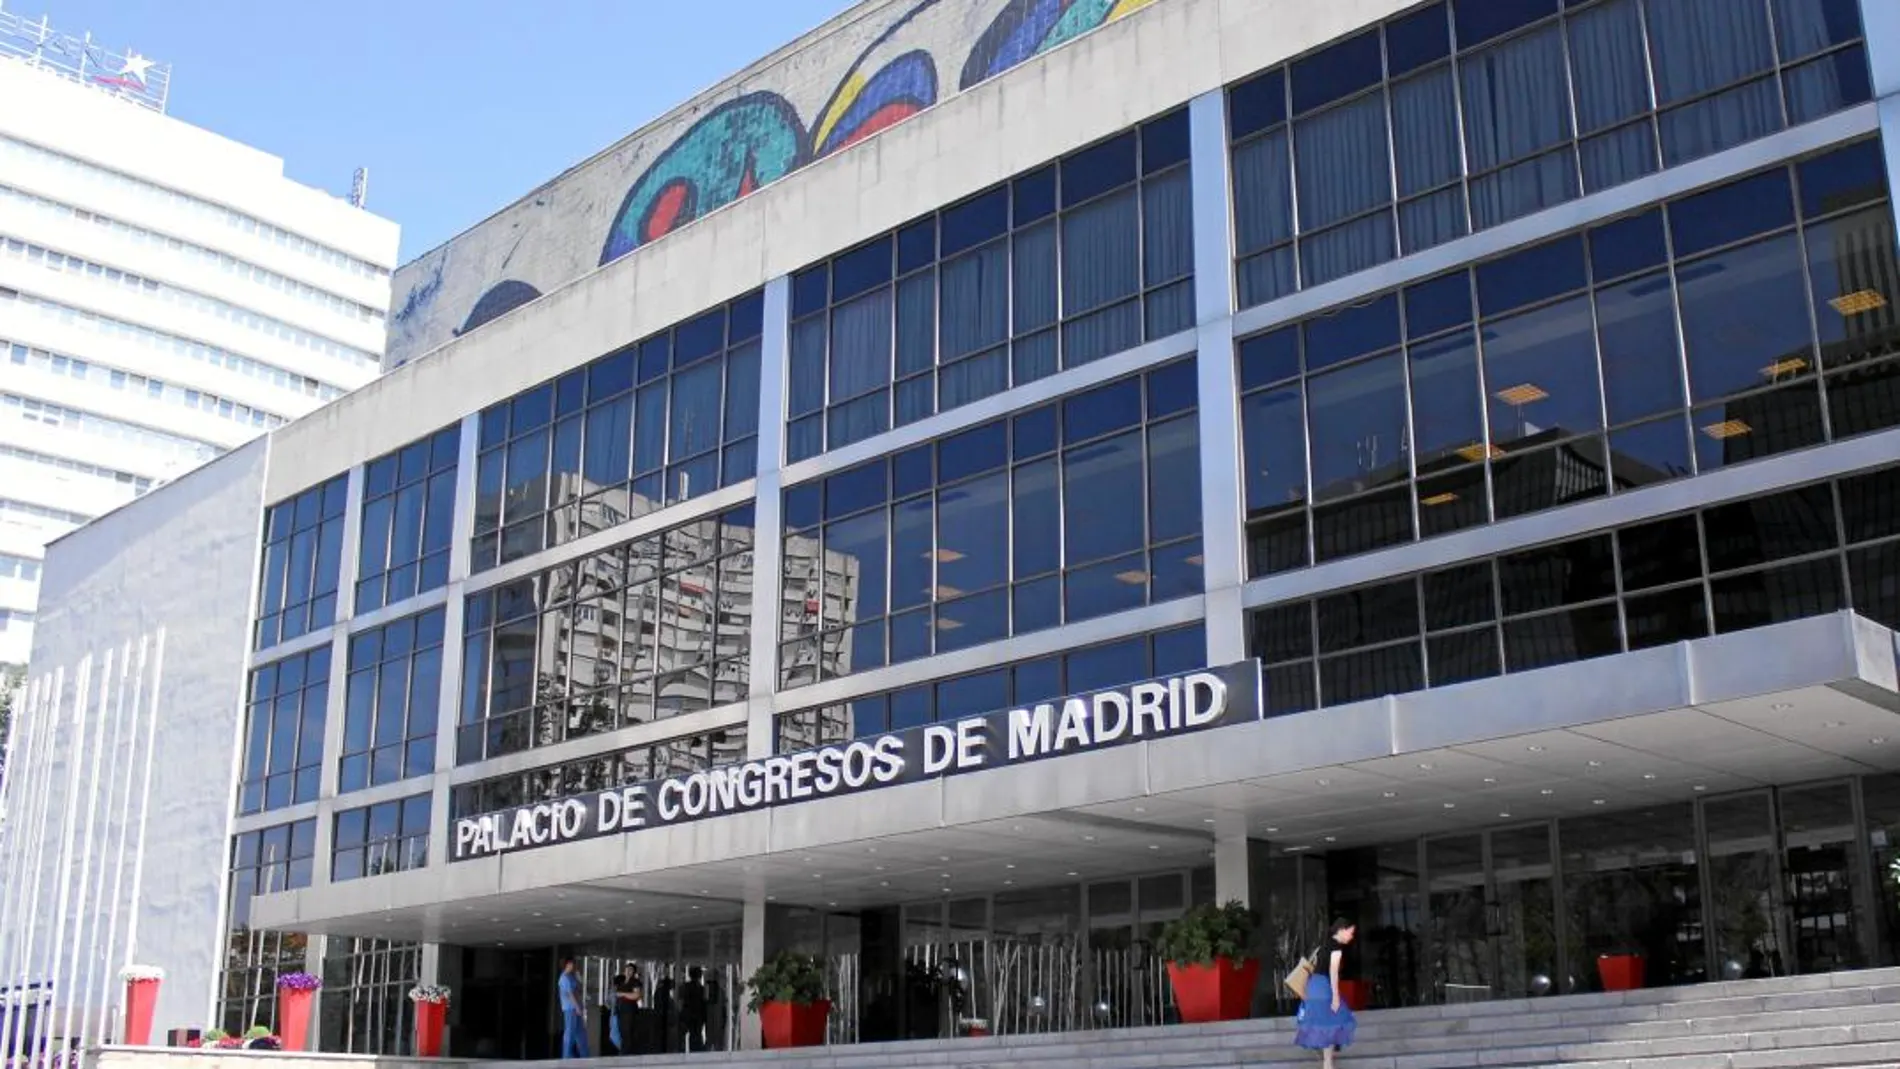 El recinto, situado frente al Santiago Bernabéu, permanece prácticamente en desuso desde 2012